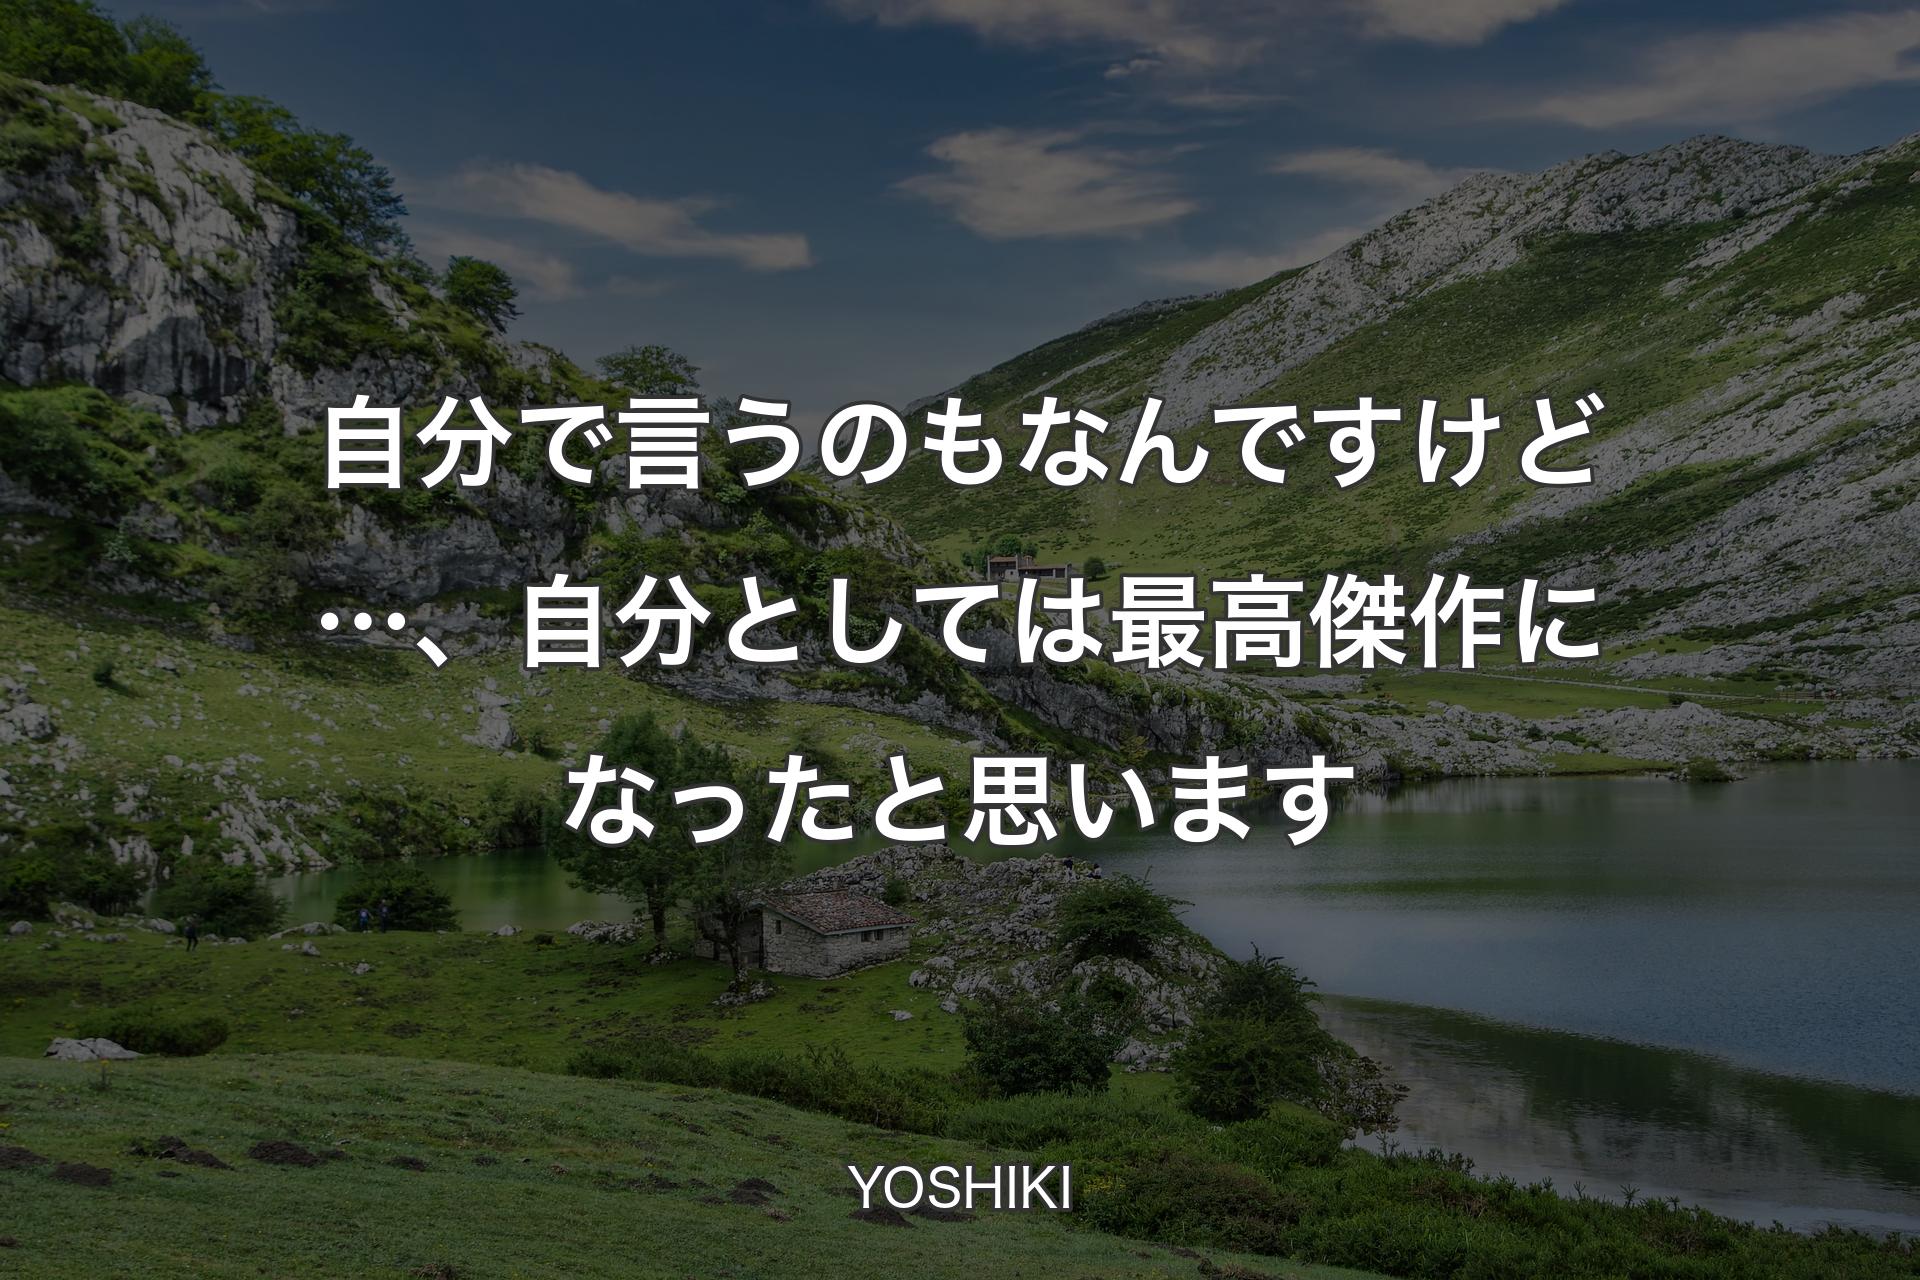 【背景1】自分で言うのもなんですけど…、自分としては最高傑作になったと思います - YOSHIKI